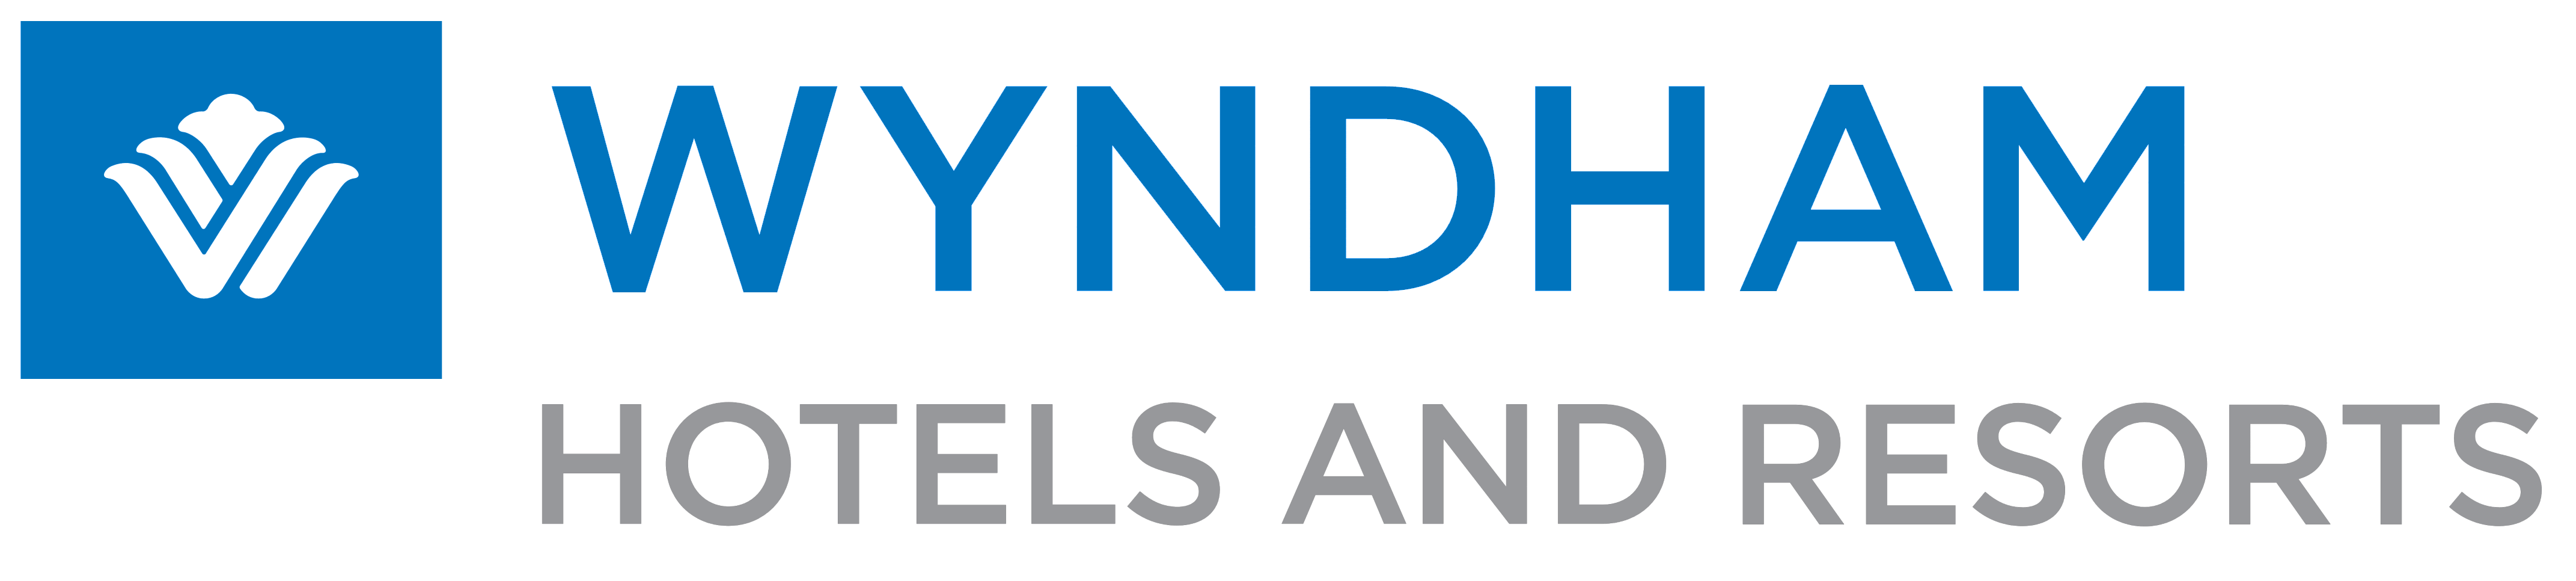 Wyndham Logo - Wyndham